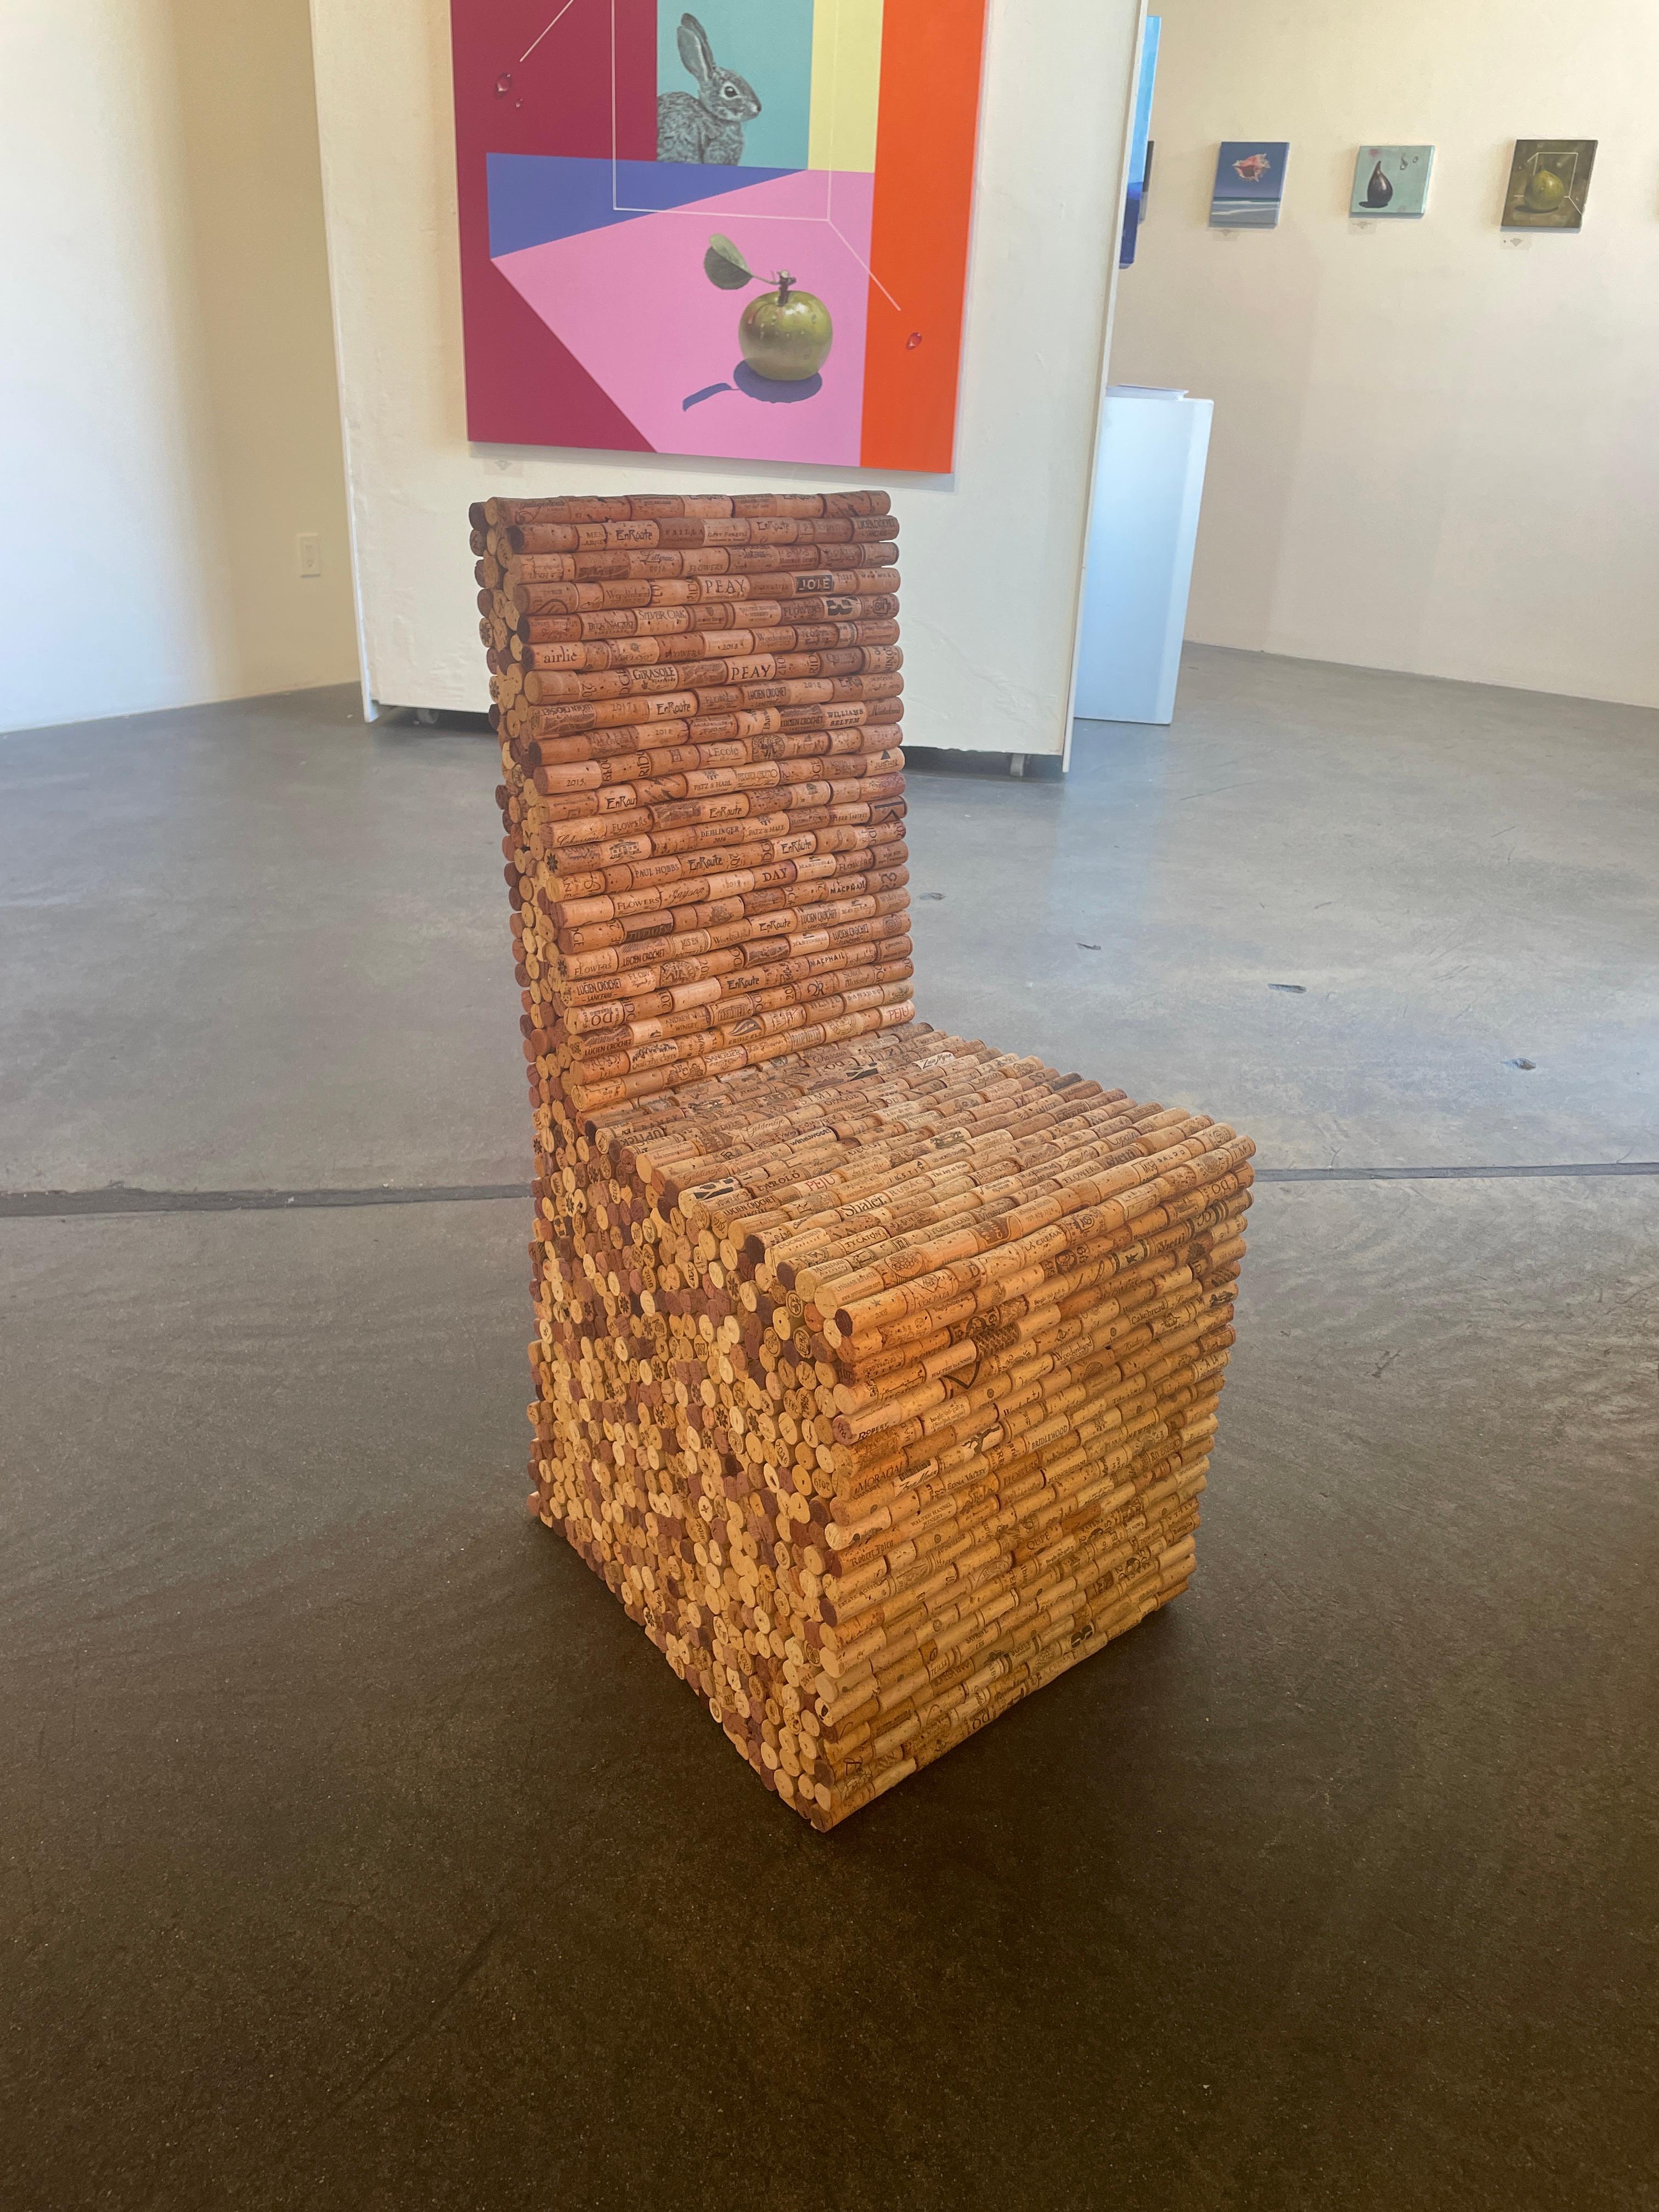 Cork Chair - Sculpture by Aaron Kramer